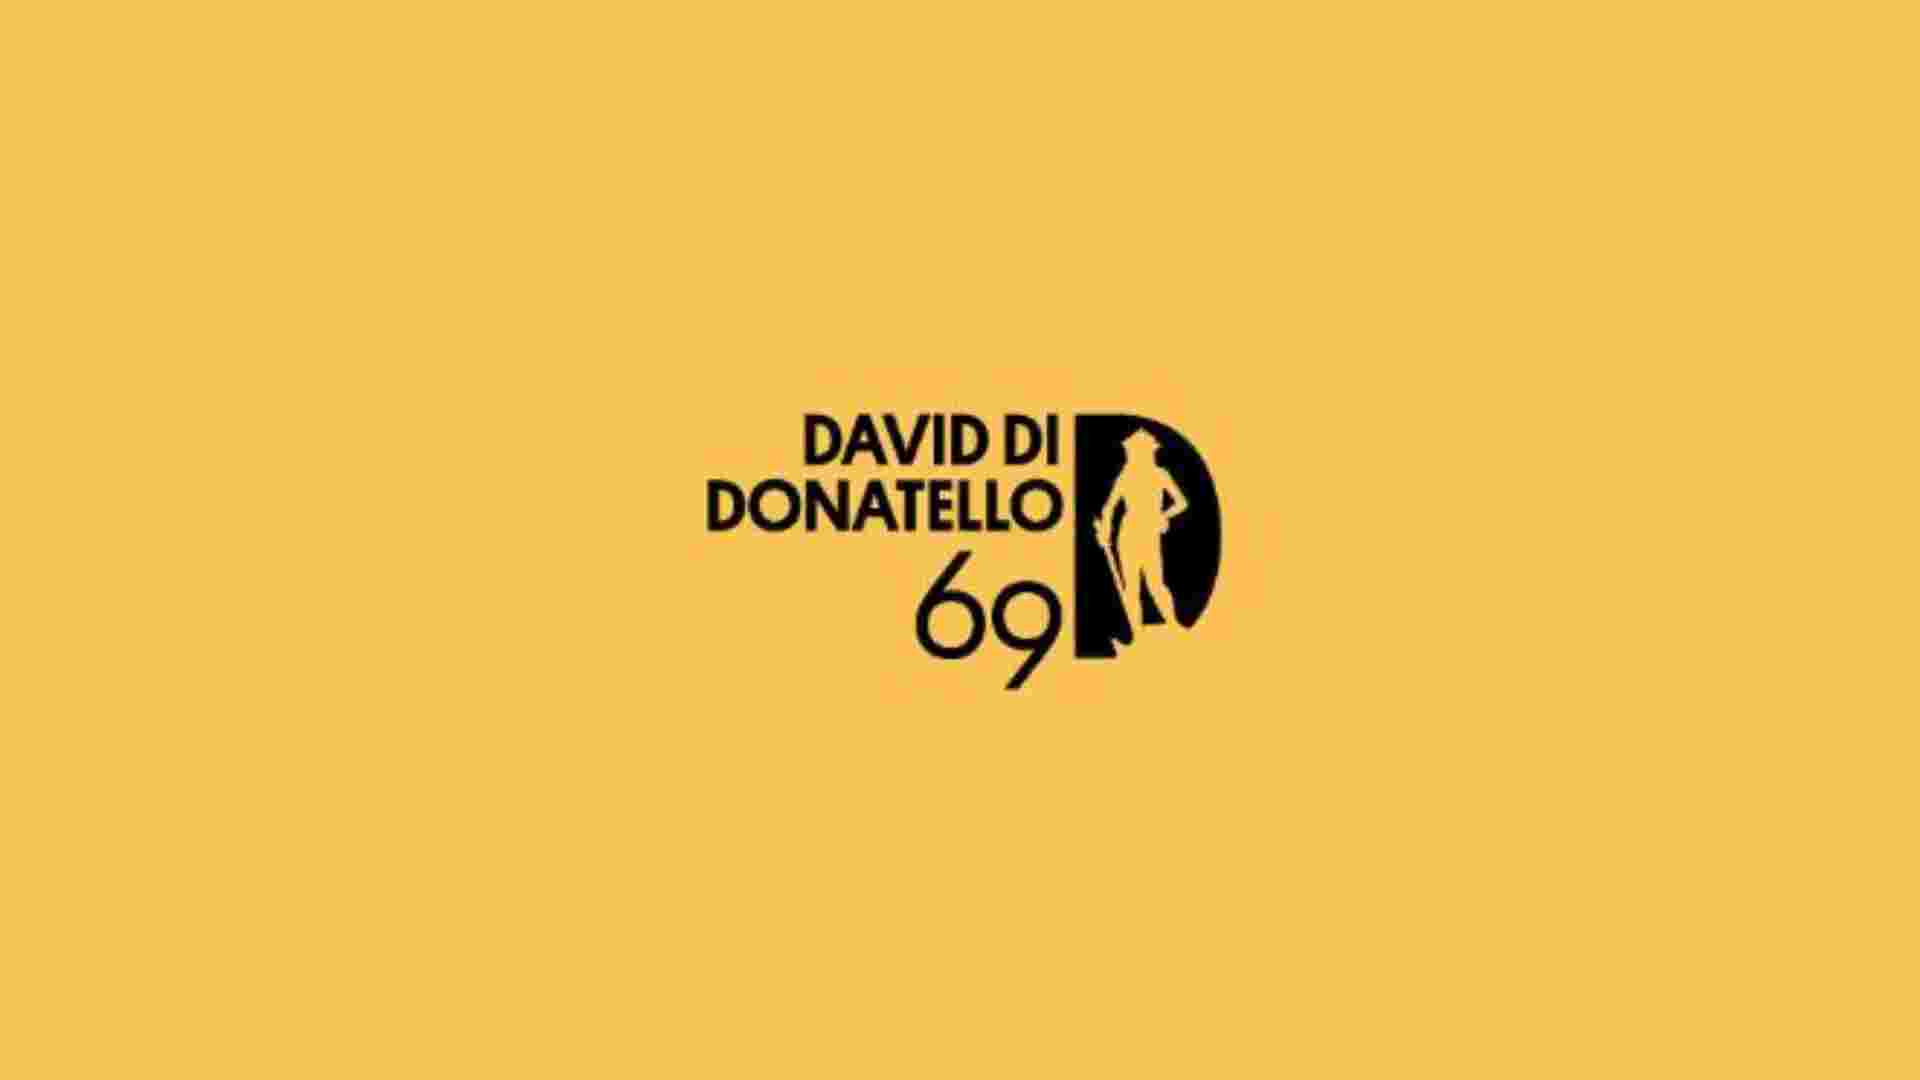 David di Donatello, “C’è ancora domani” da record con 19 nomination